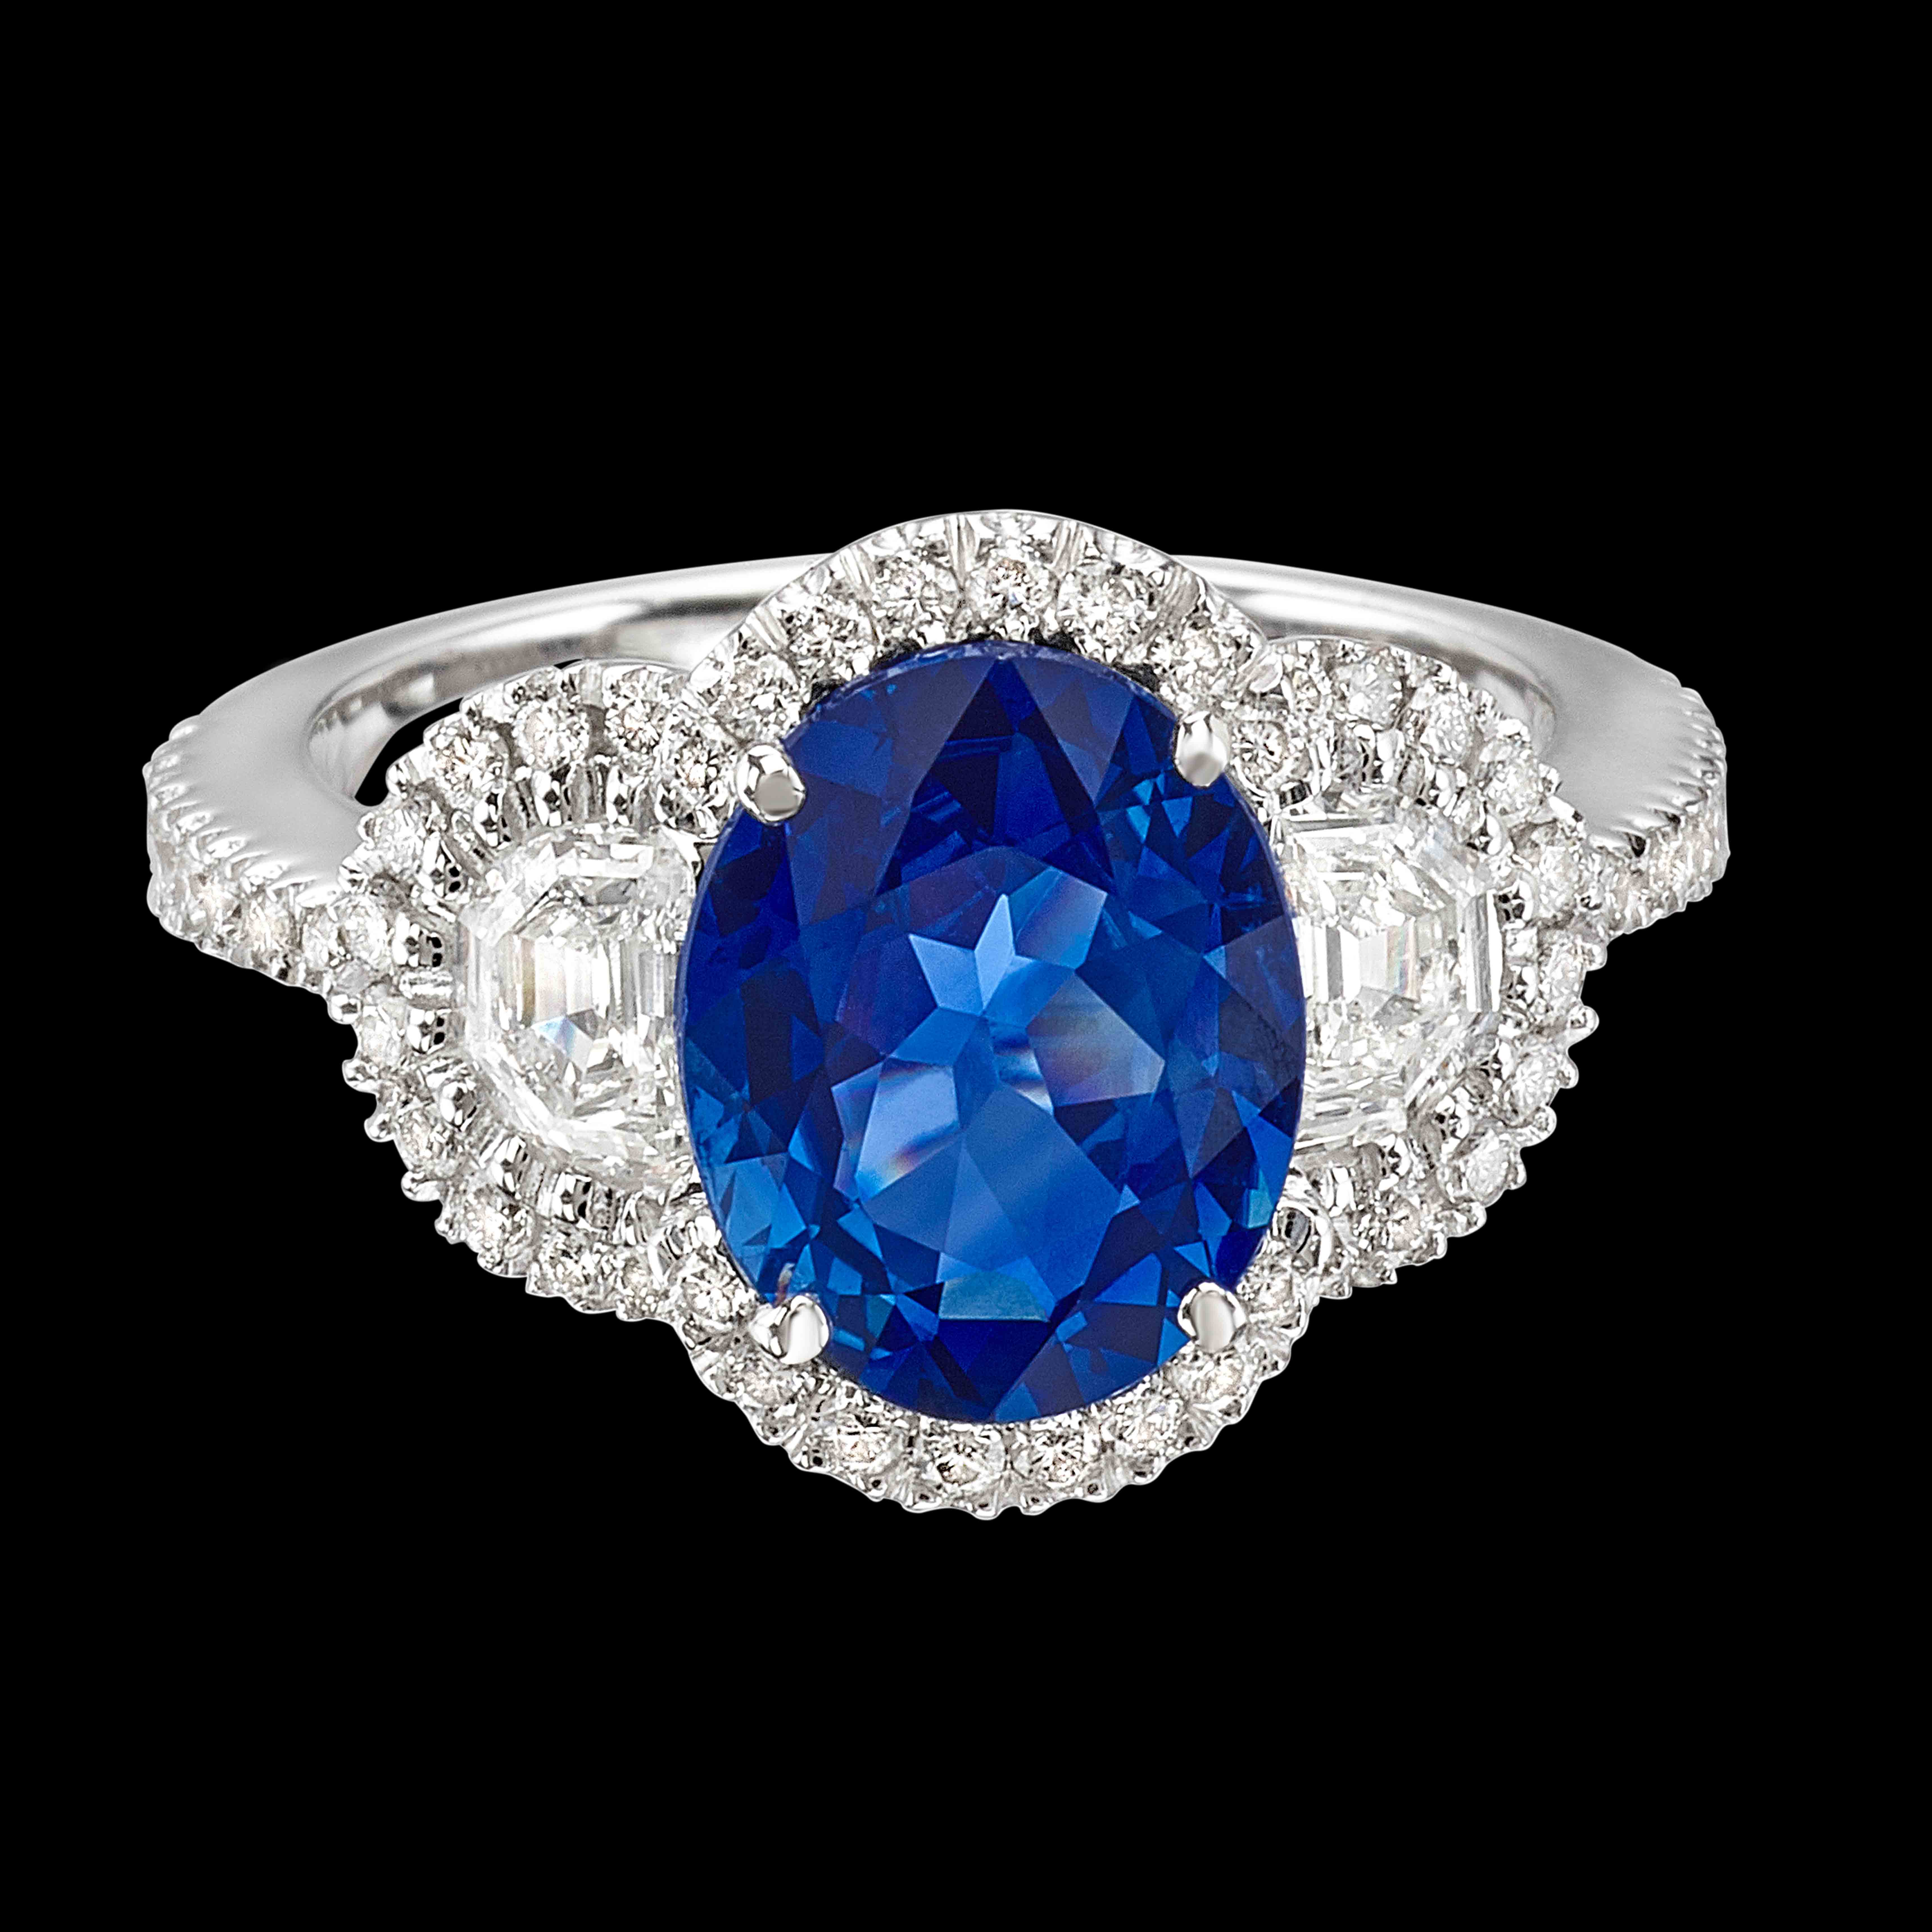 Massimo Raiteri Exclusive Jewelry classic design timeless classici senza tempo rubino rubini ruby sapphire zaffiri emerald ring anelli anello diamanti mezzalune moon